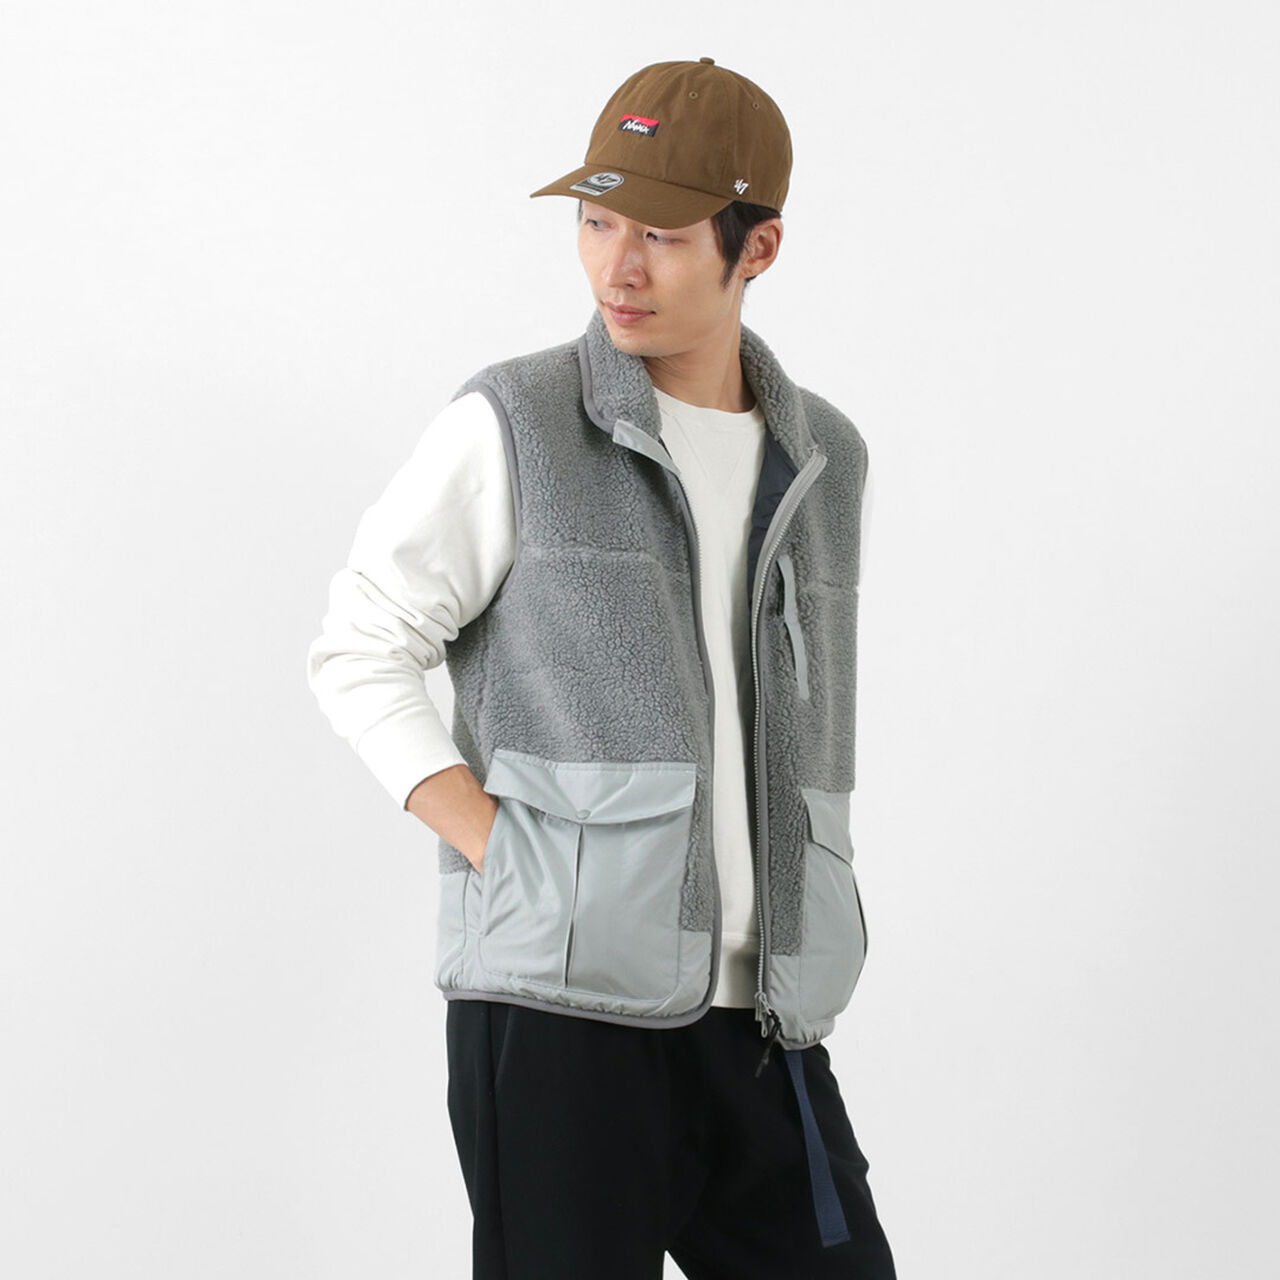 Boa Fleece Vest,Grey, large image number 0